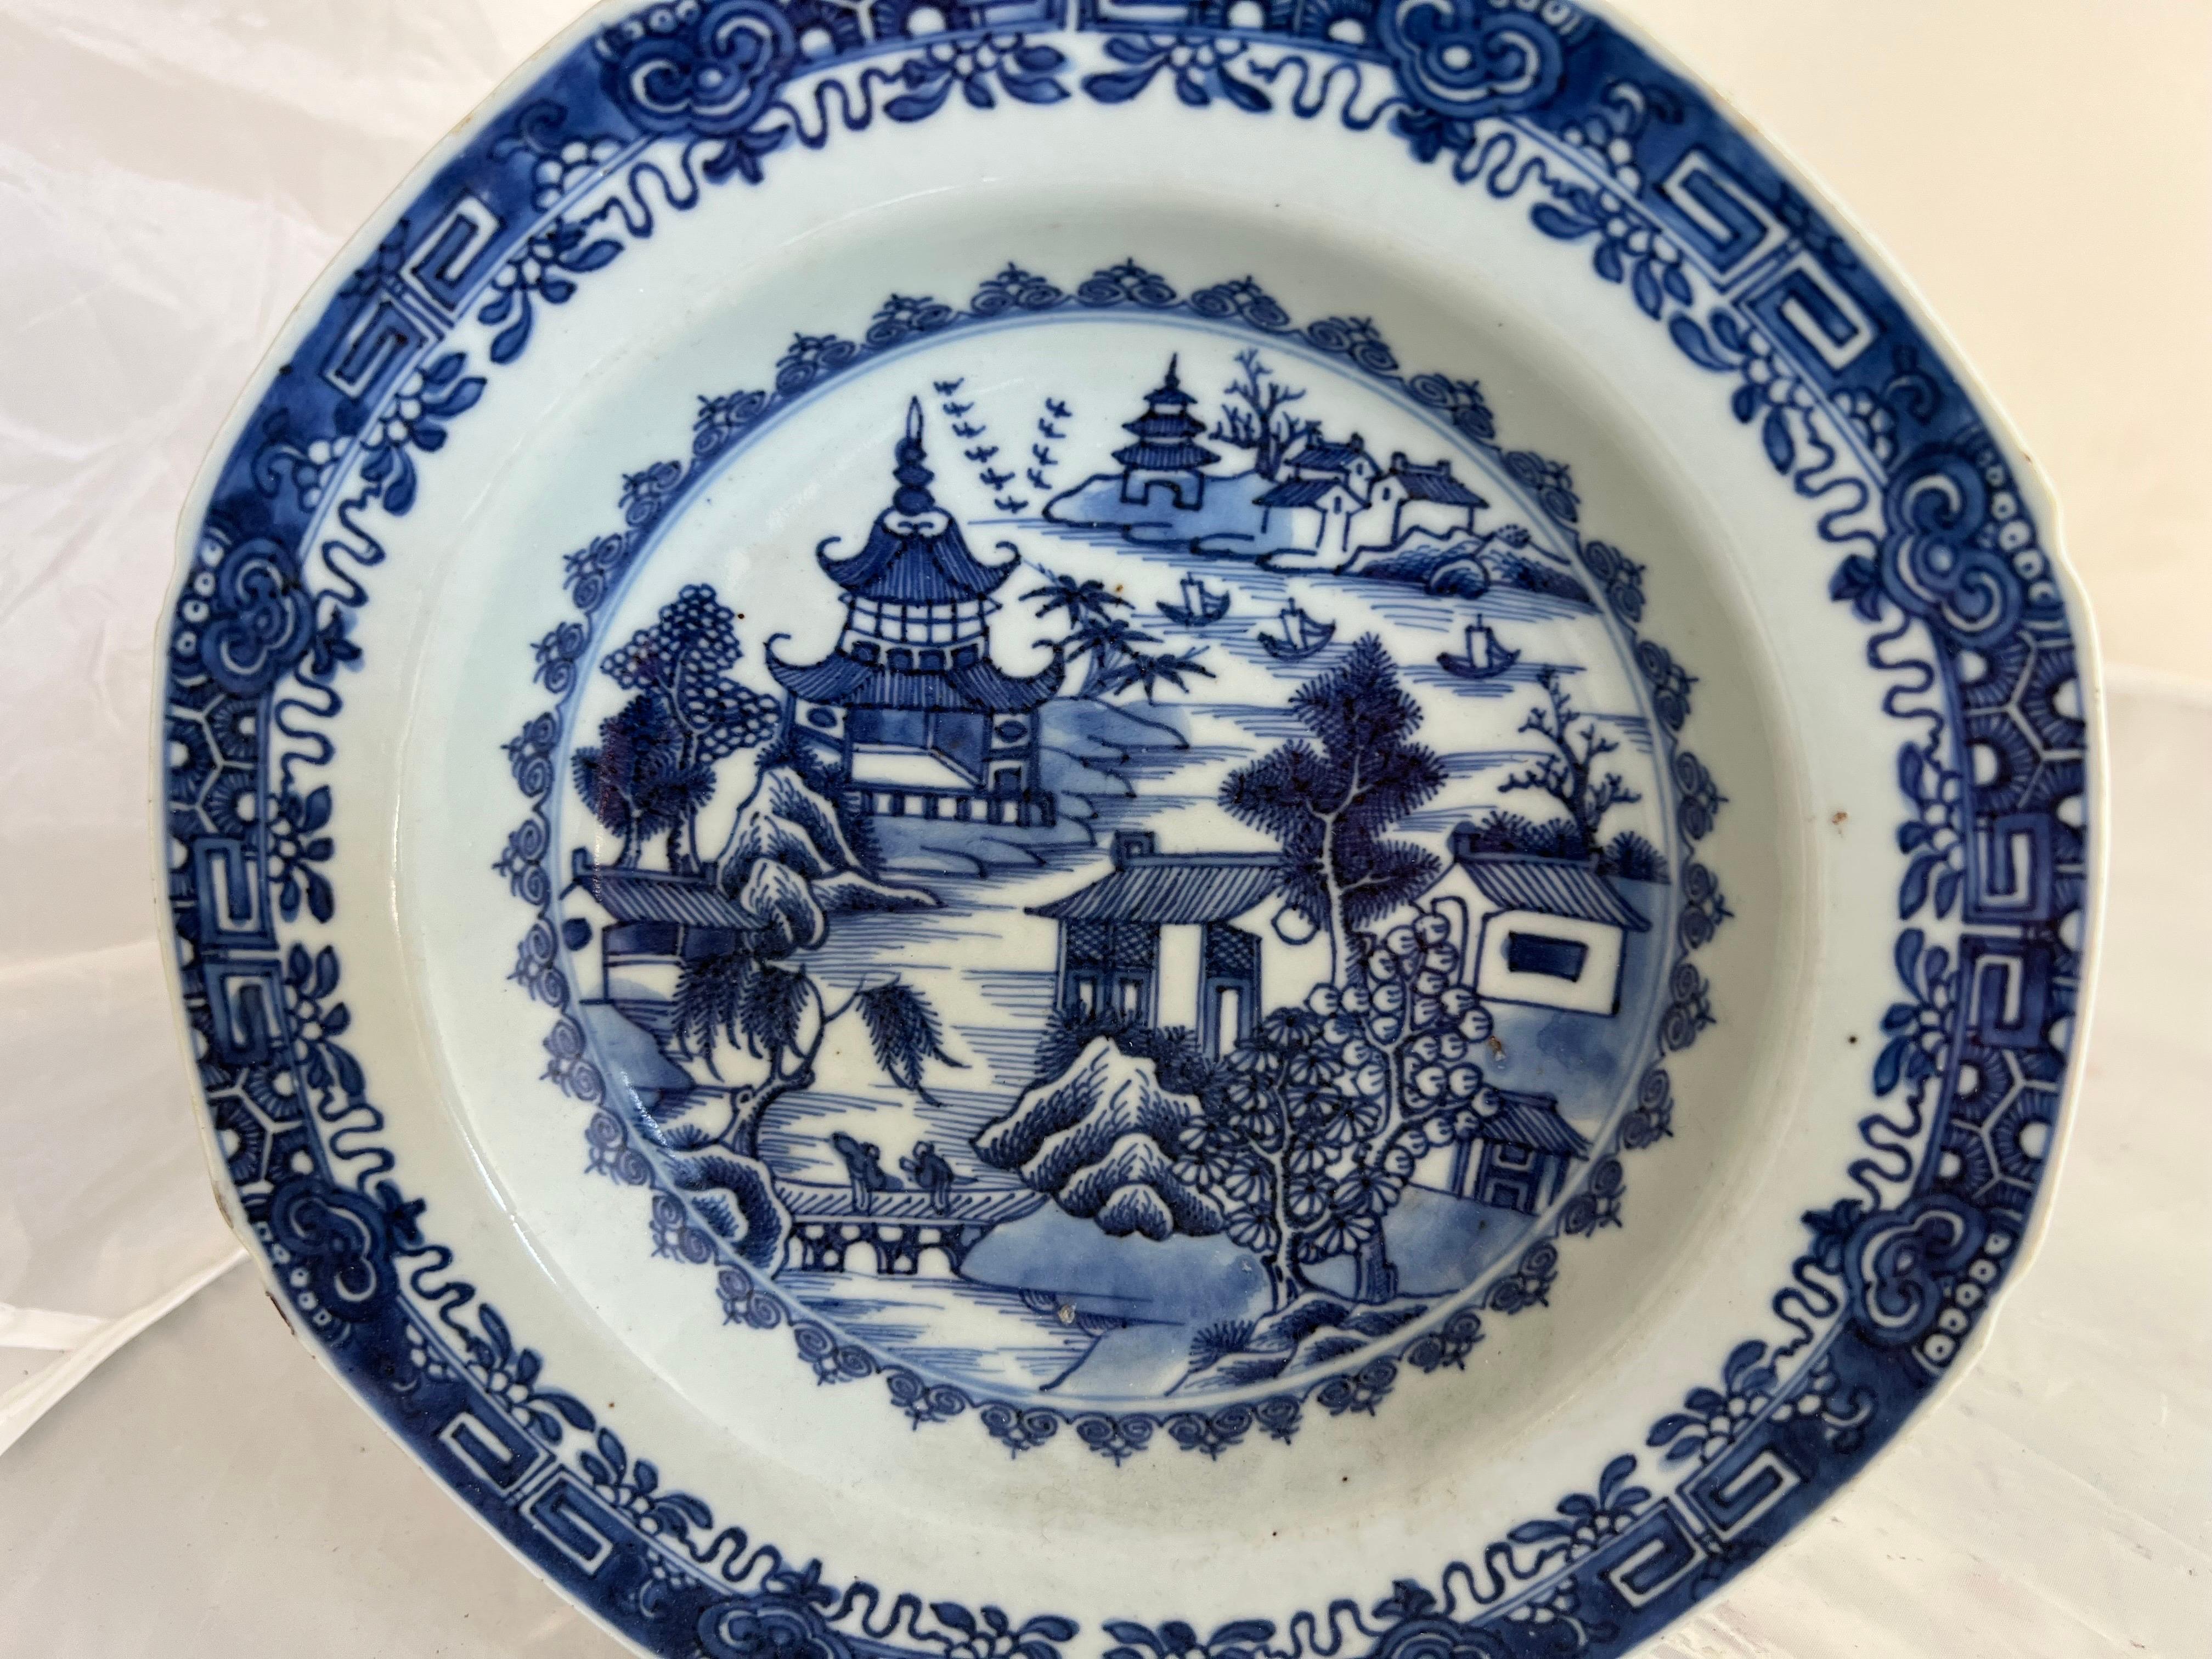 Un plat d'exportation chinois bleu et blanc du XVIIIe siècle en pierre de fer, représentant des scènes avec des personnages, des bateaux, des pagodes, des maisons et des arbres, reflète la complexité et l'art caractéristiques de cette période.  Les